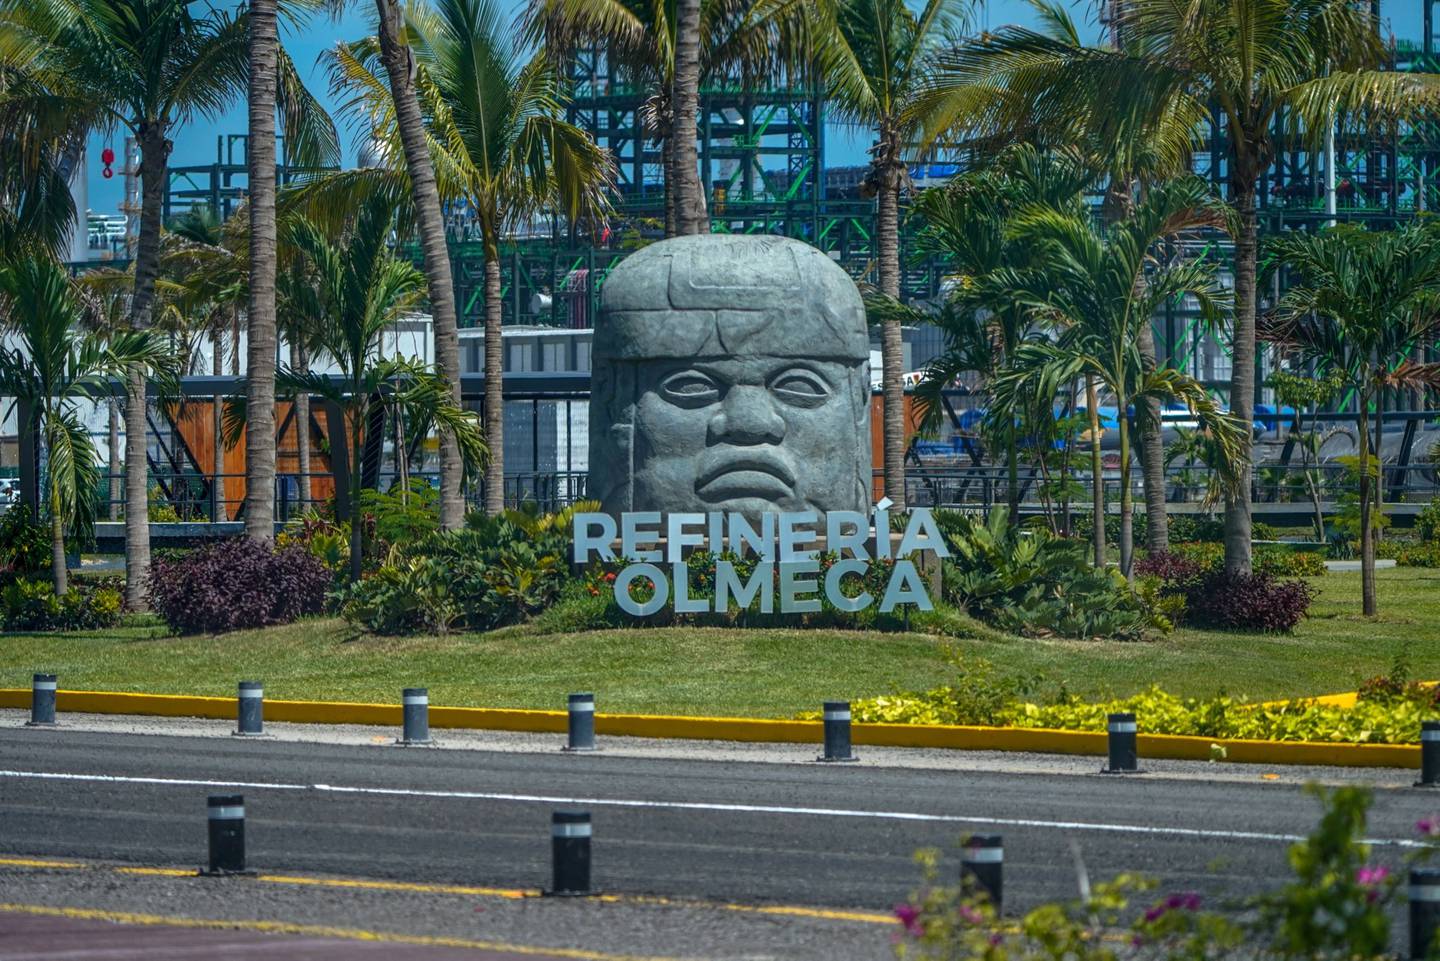 Un letrero de la refinería Olmeca, conocida como Dos Bocas en el municipio de Paraíso, Tabasco.